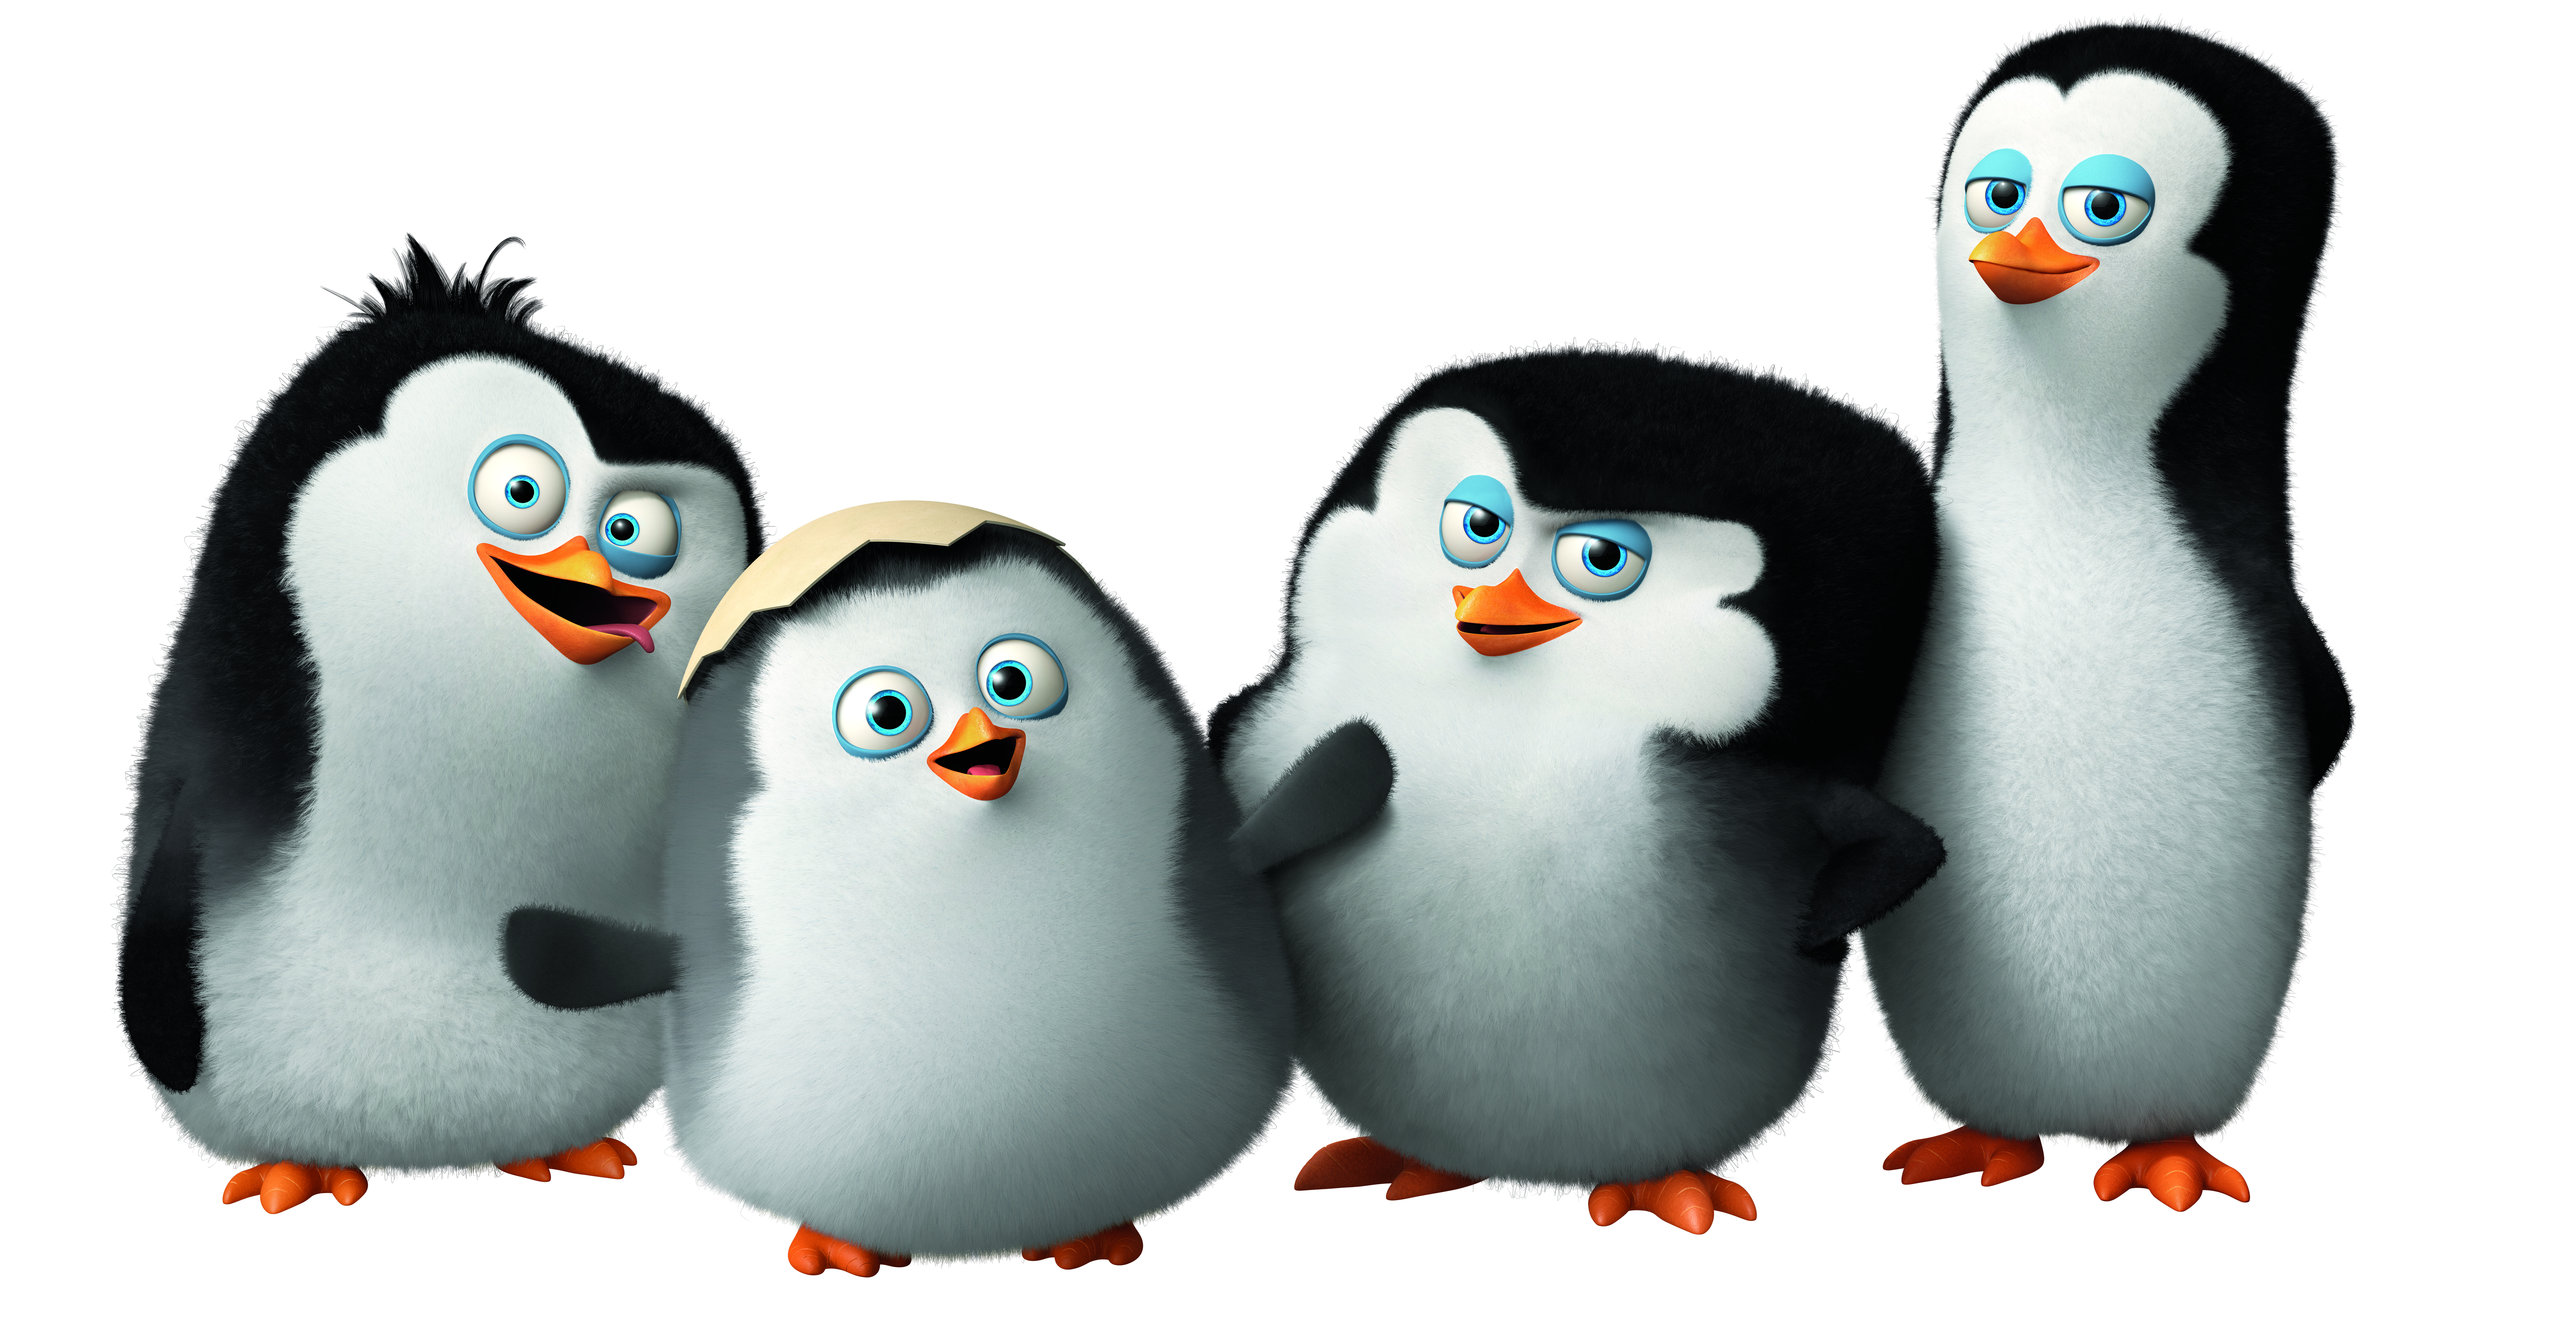 Penguins of Madagascar Update | The JumpStart Blog